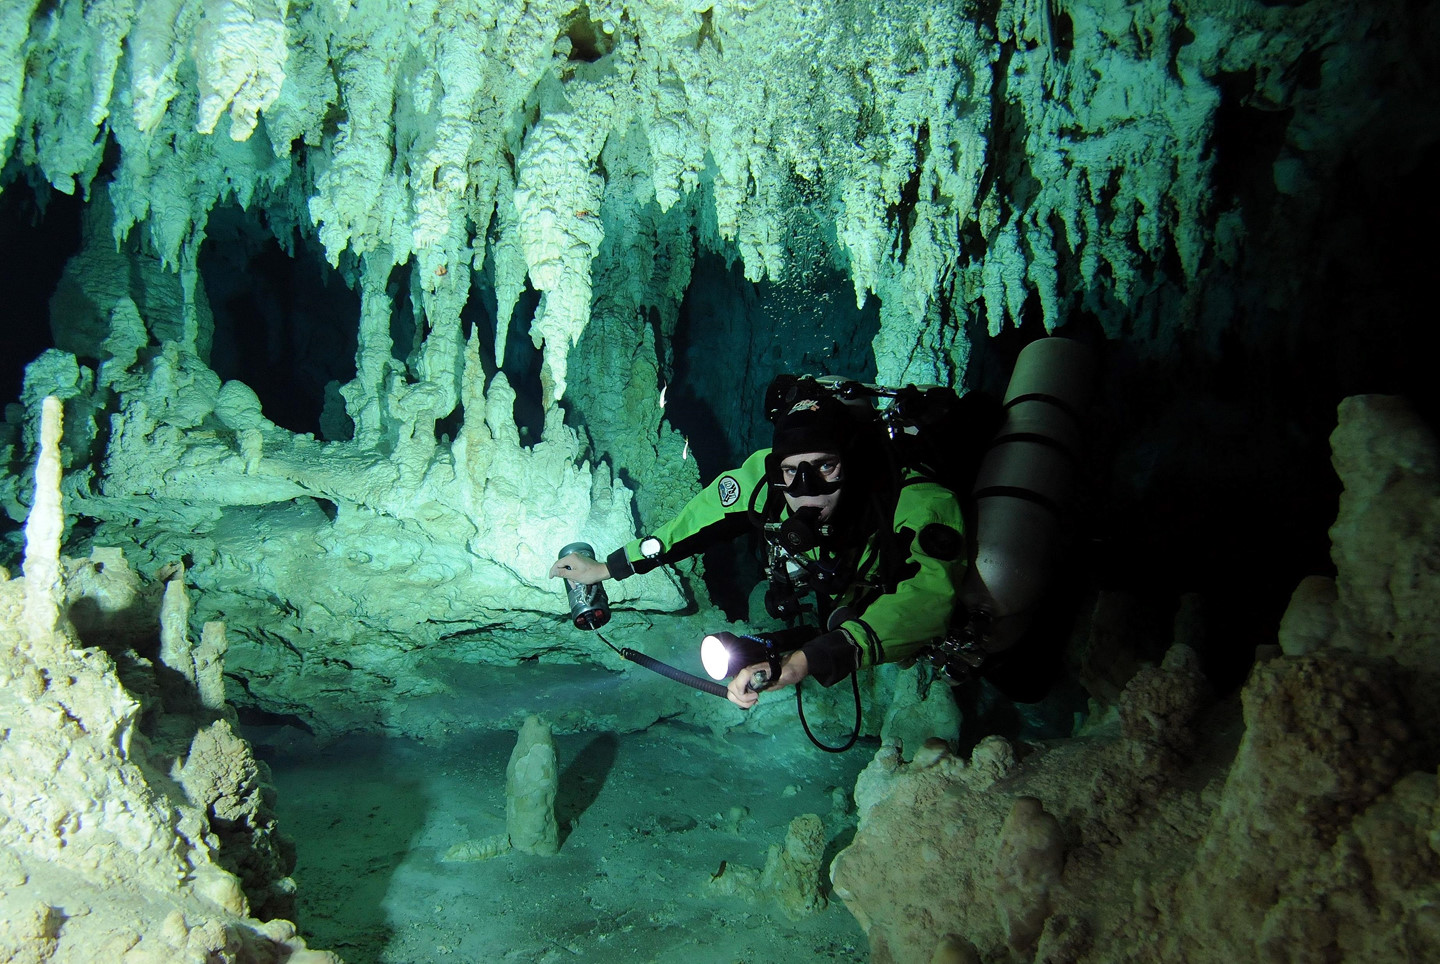  Sistema Ox Bel Ha (Mexico) - 257,1 km: Tên hang động kỳ thú này ở bang Quintana Roo có nghĩa là 3 lối đi dưới nước. Nơi đây là một trong những nguồn nước ngọt quan trọng nhất khu vực. Thời gian lý tưởng để du khách ghé thăm Sistema Ox Bel Ha là mùa hè, vì khí hậu khá phù hợp để khám phá các khu vực khác nhau trong hang động và thỏa sức bơi lặn. Ảnh: Alux Diver.